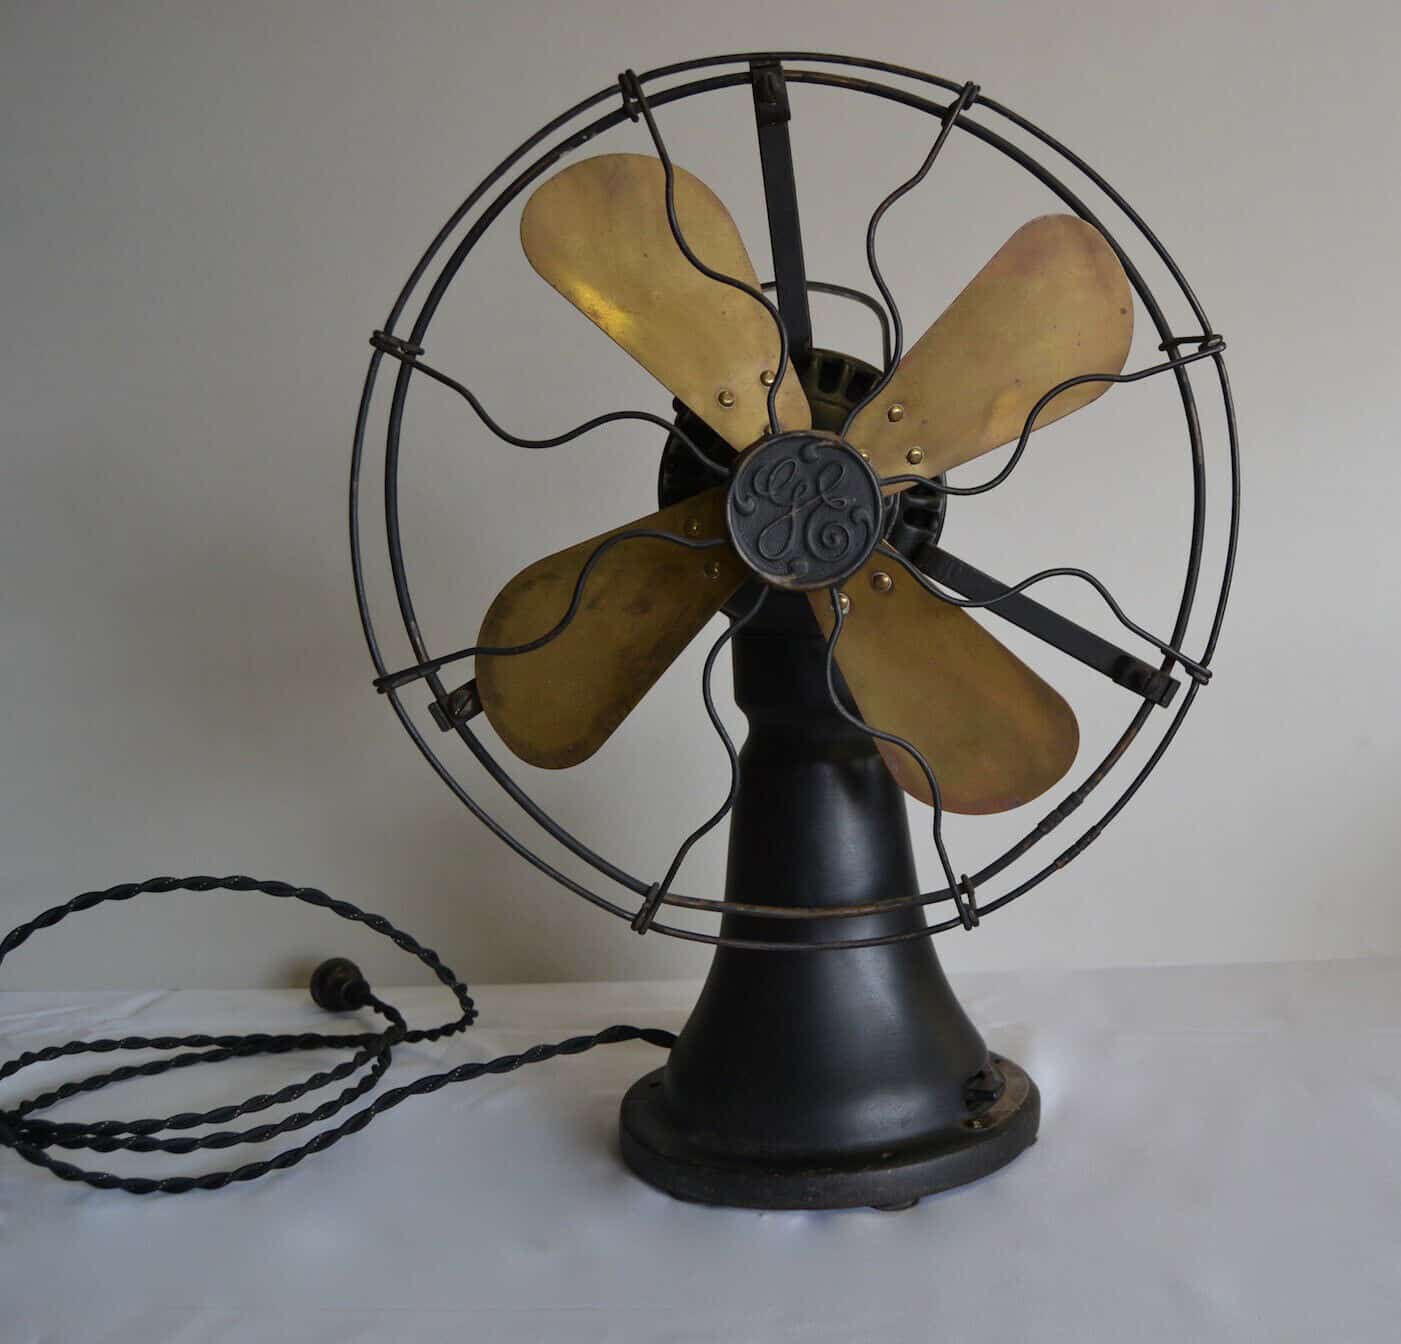 General Electric Brass Bladed Desk Fan From 1920